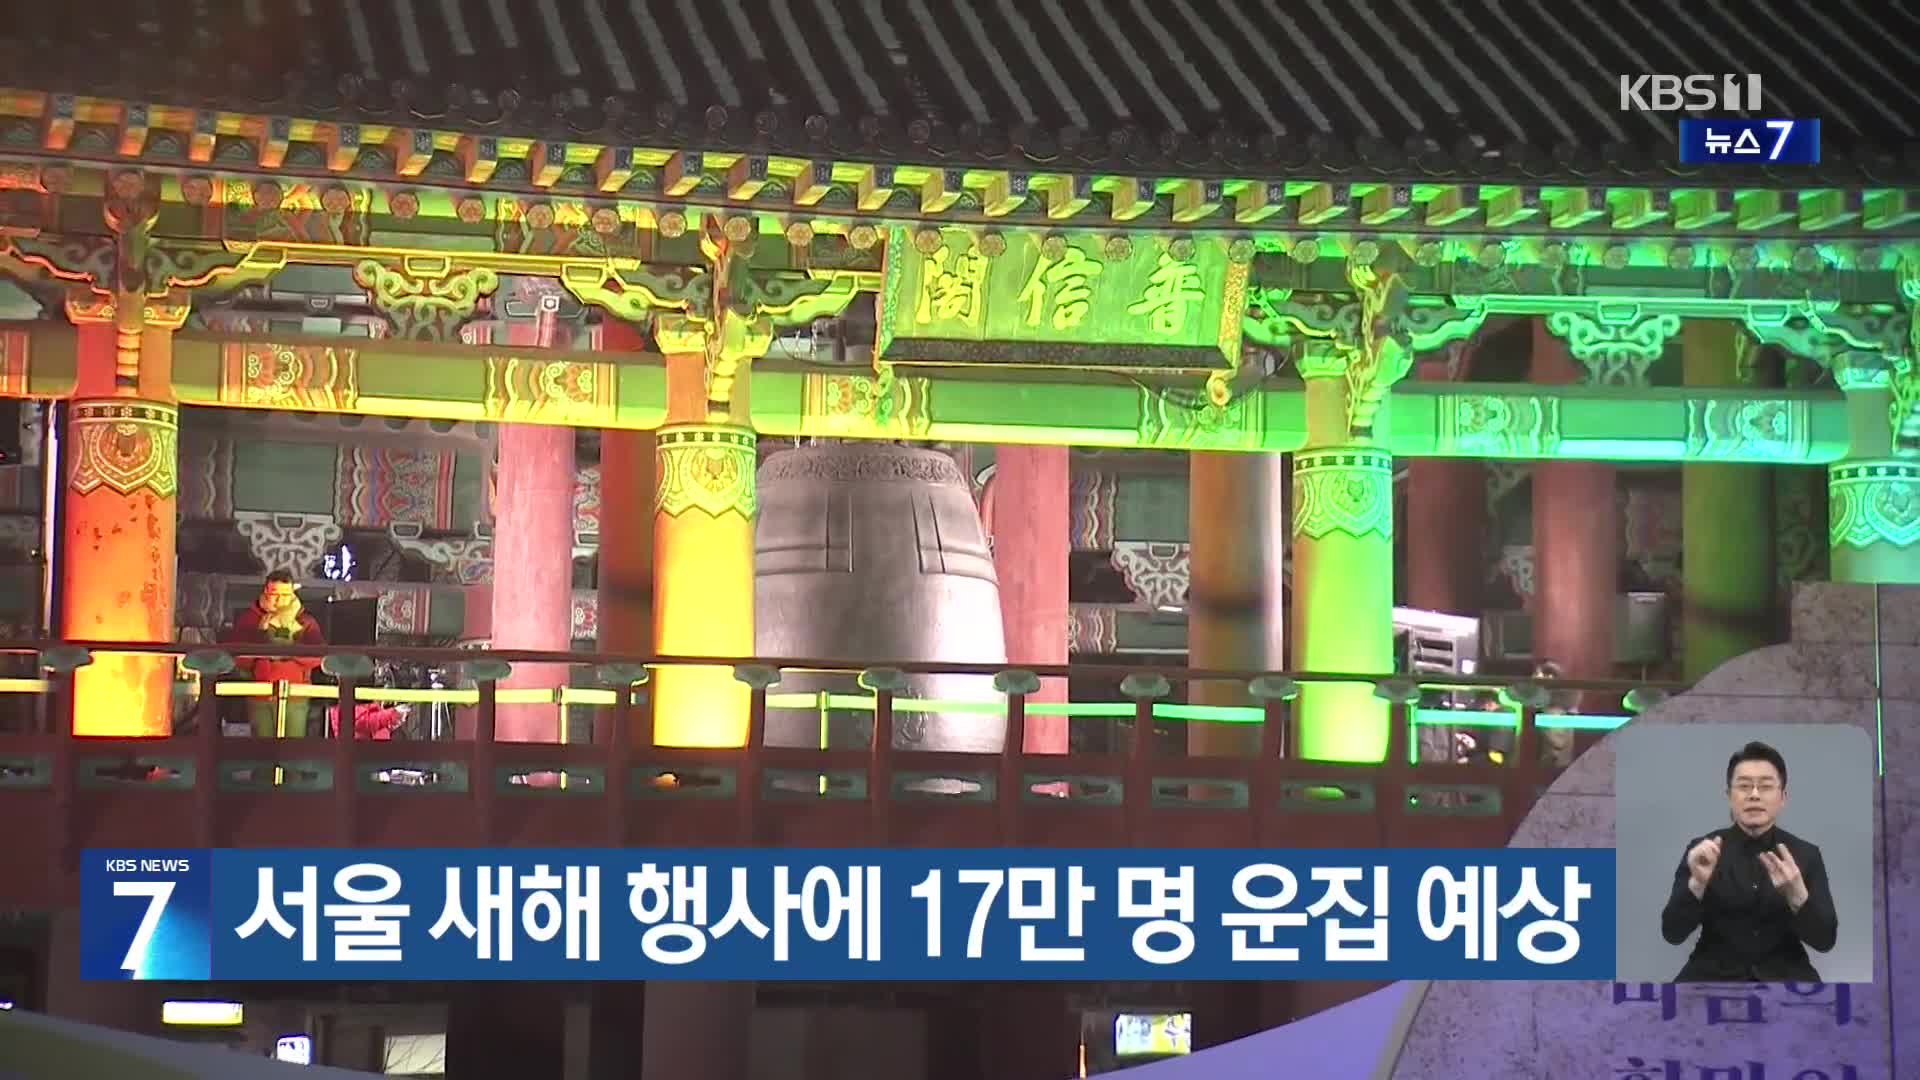 서울 새해 행사에 17만 명 운집 예상